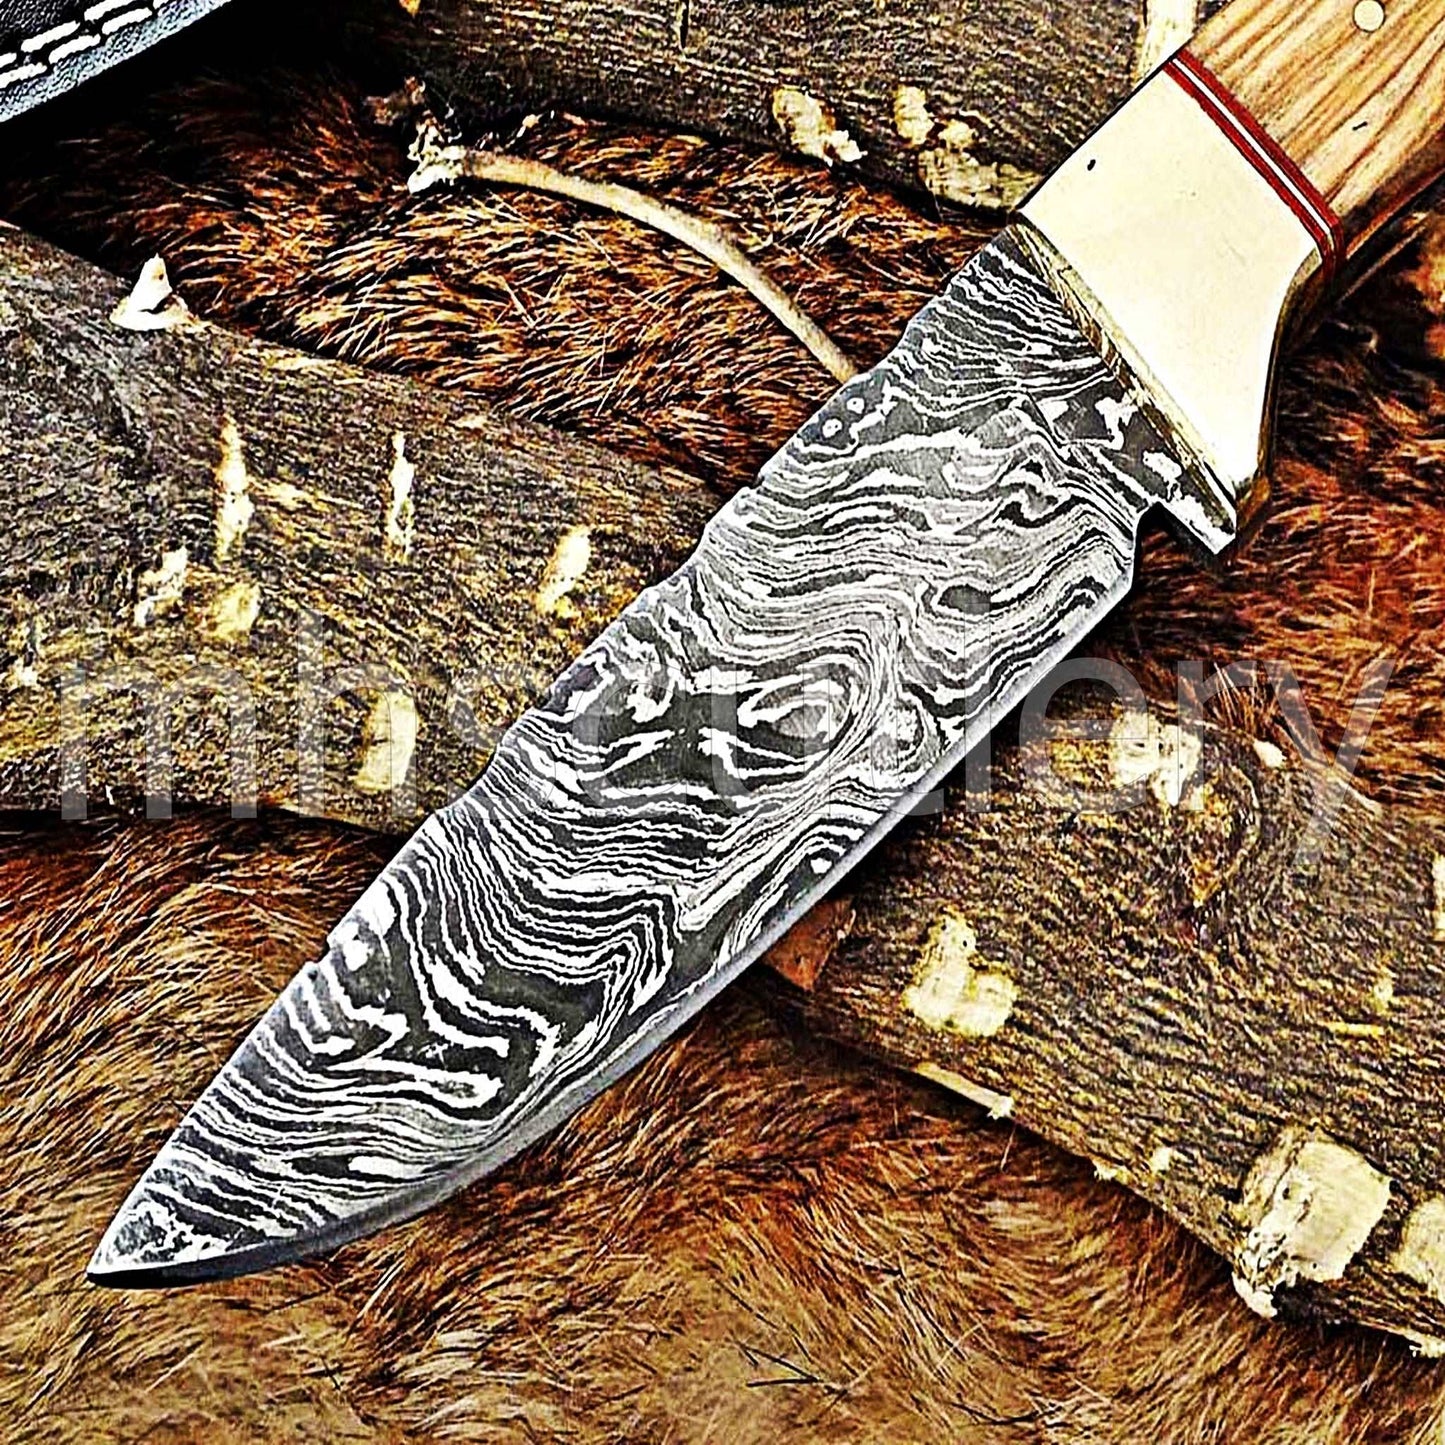 Custom Hand Forged Damascus Steel Hunter Skinner Knife | mhscutlery